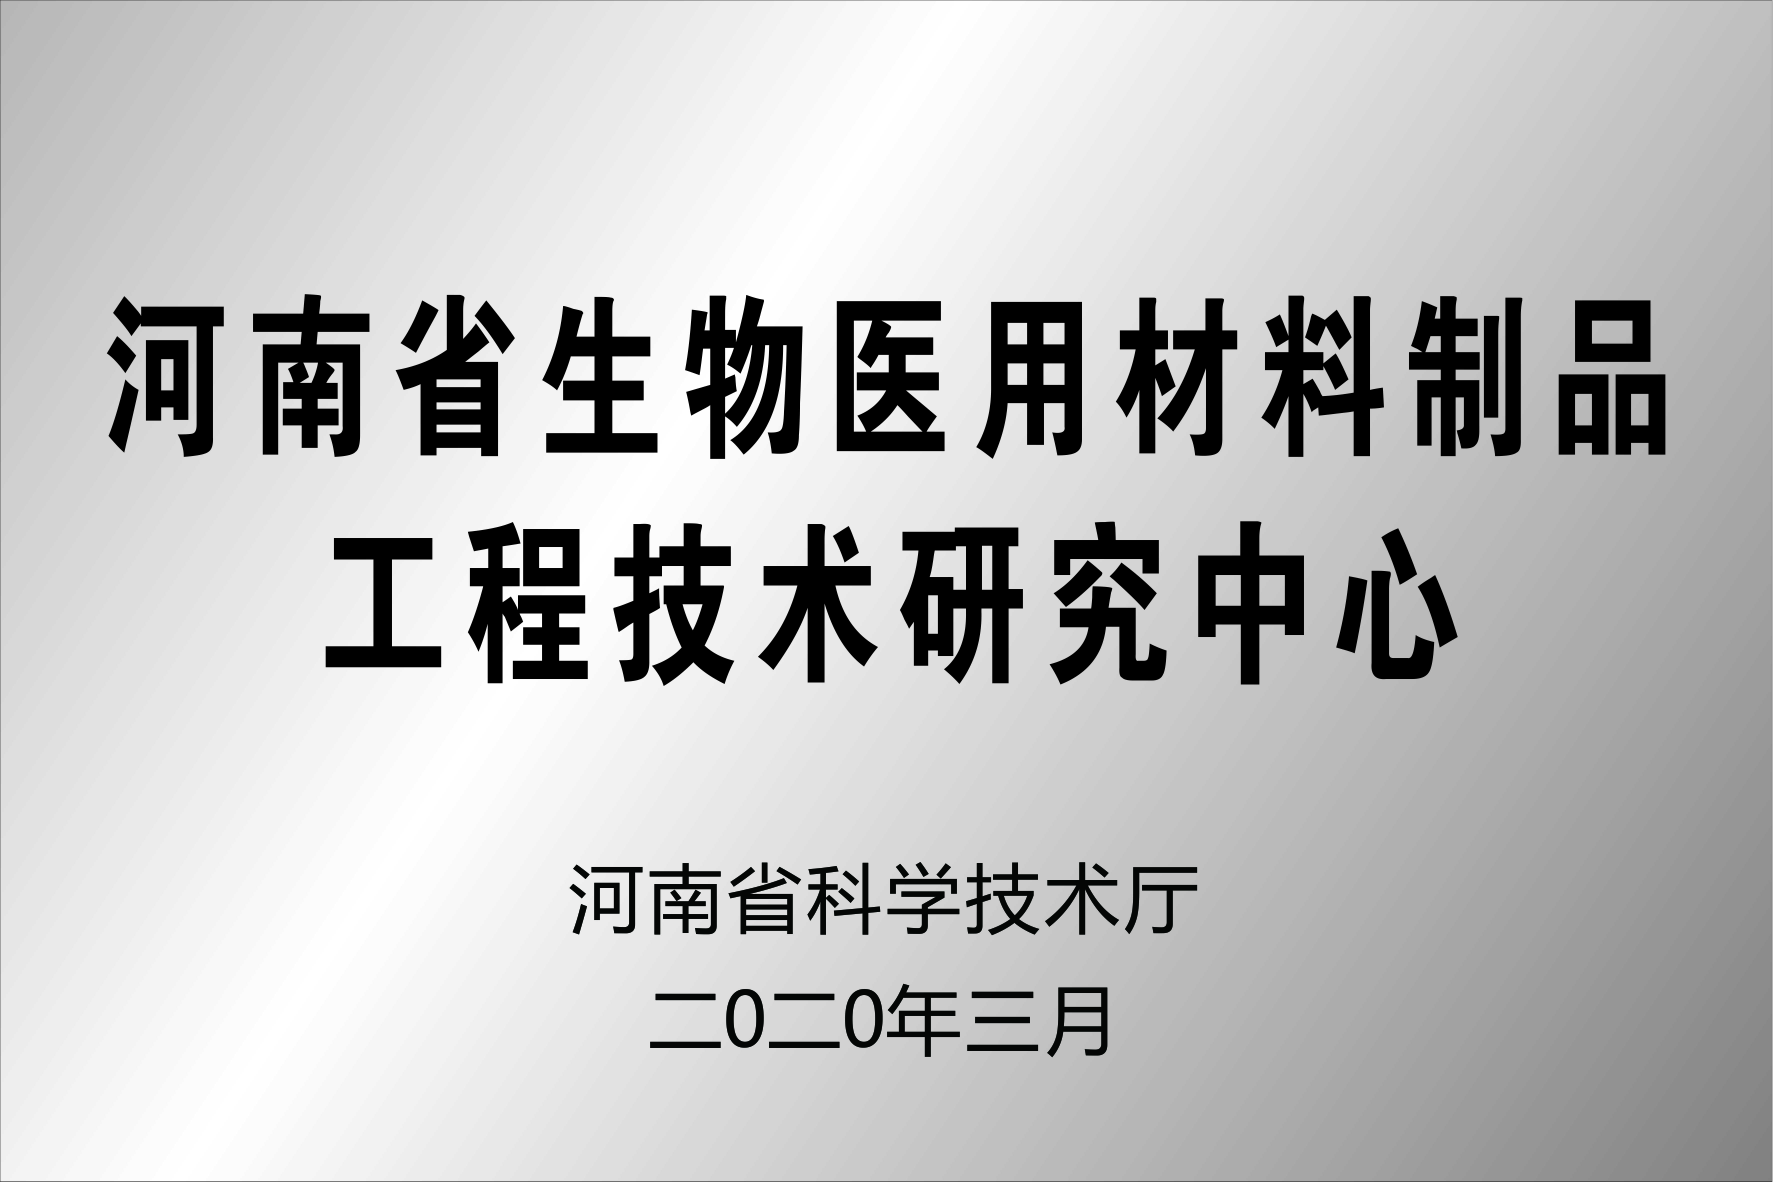 河南省生物医用材料制品工程技术研究中心